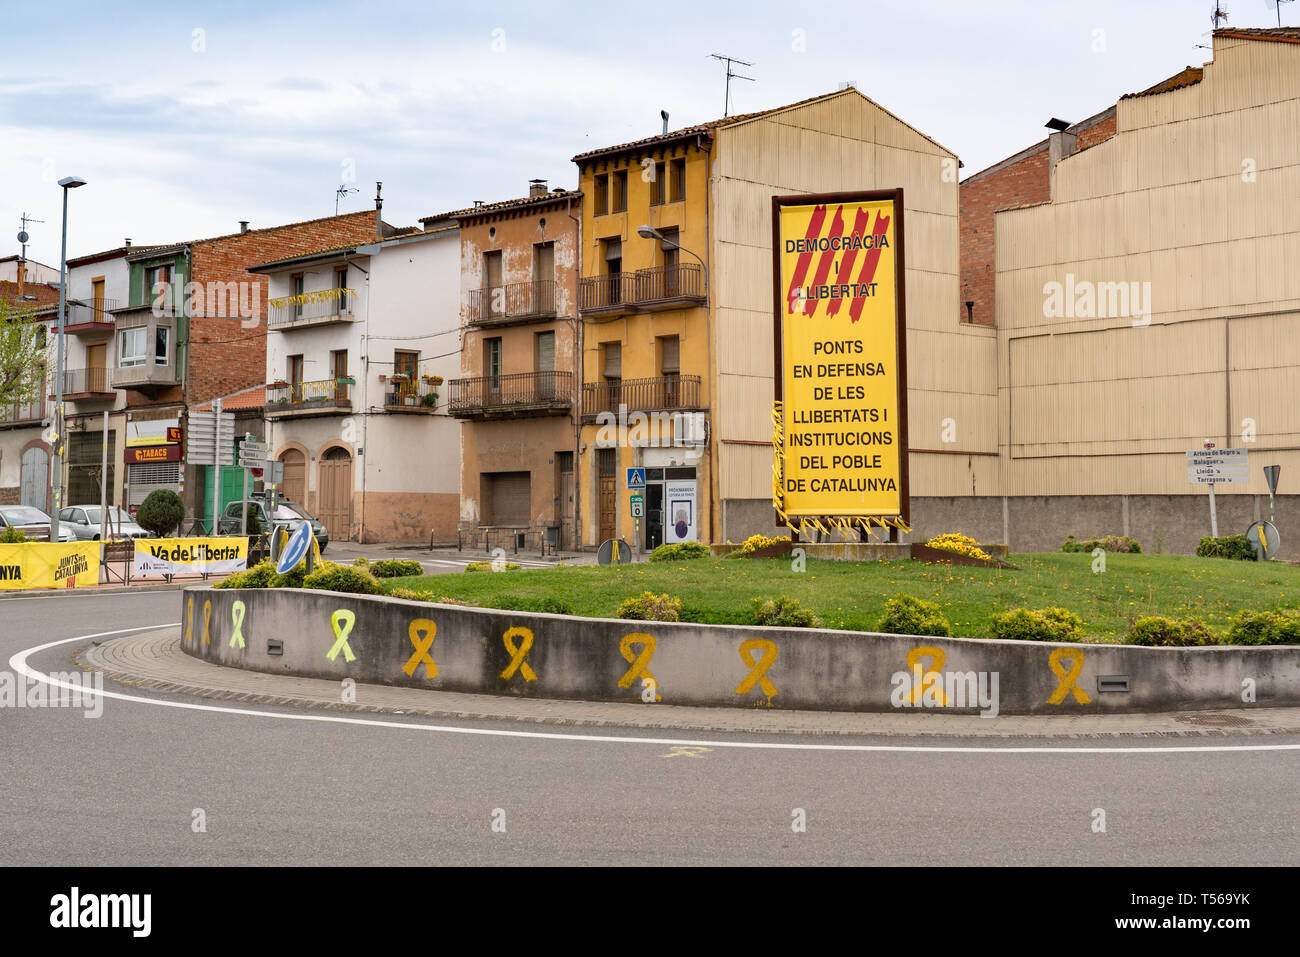 Cintas amarillas en una aldea típica en Cataluña, libertad para los presos políticos, la independencia de Catalunya, España Foto de stock